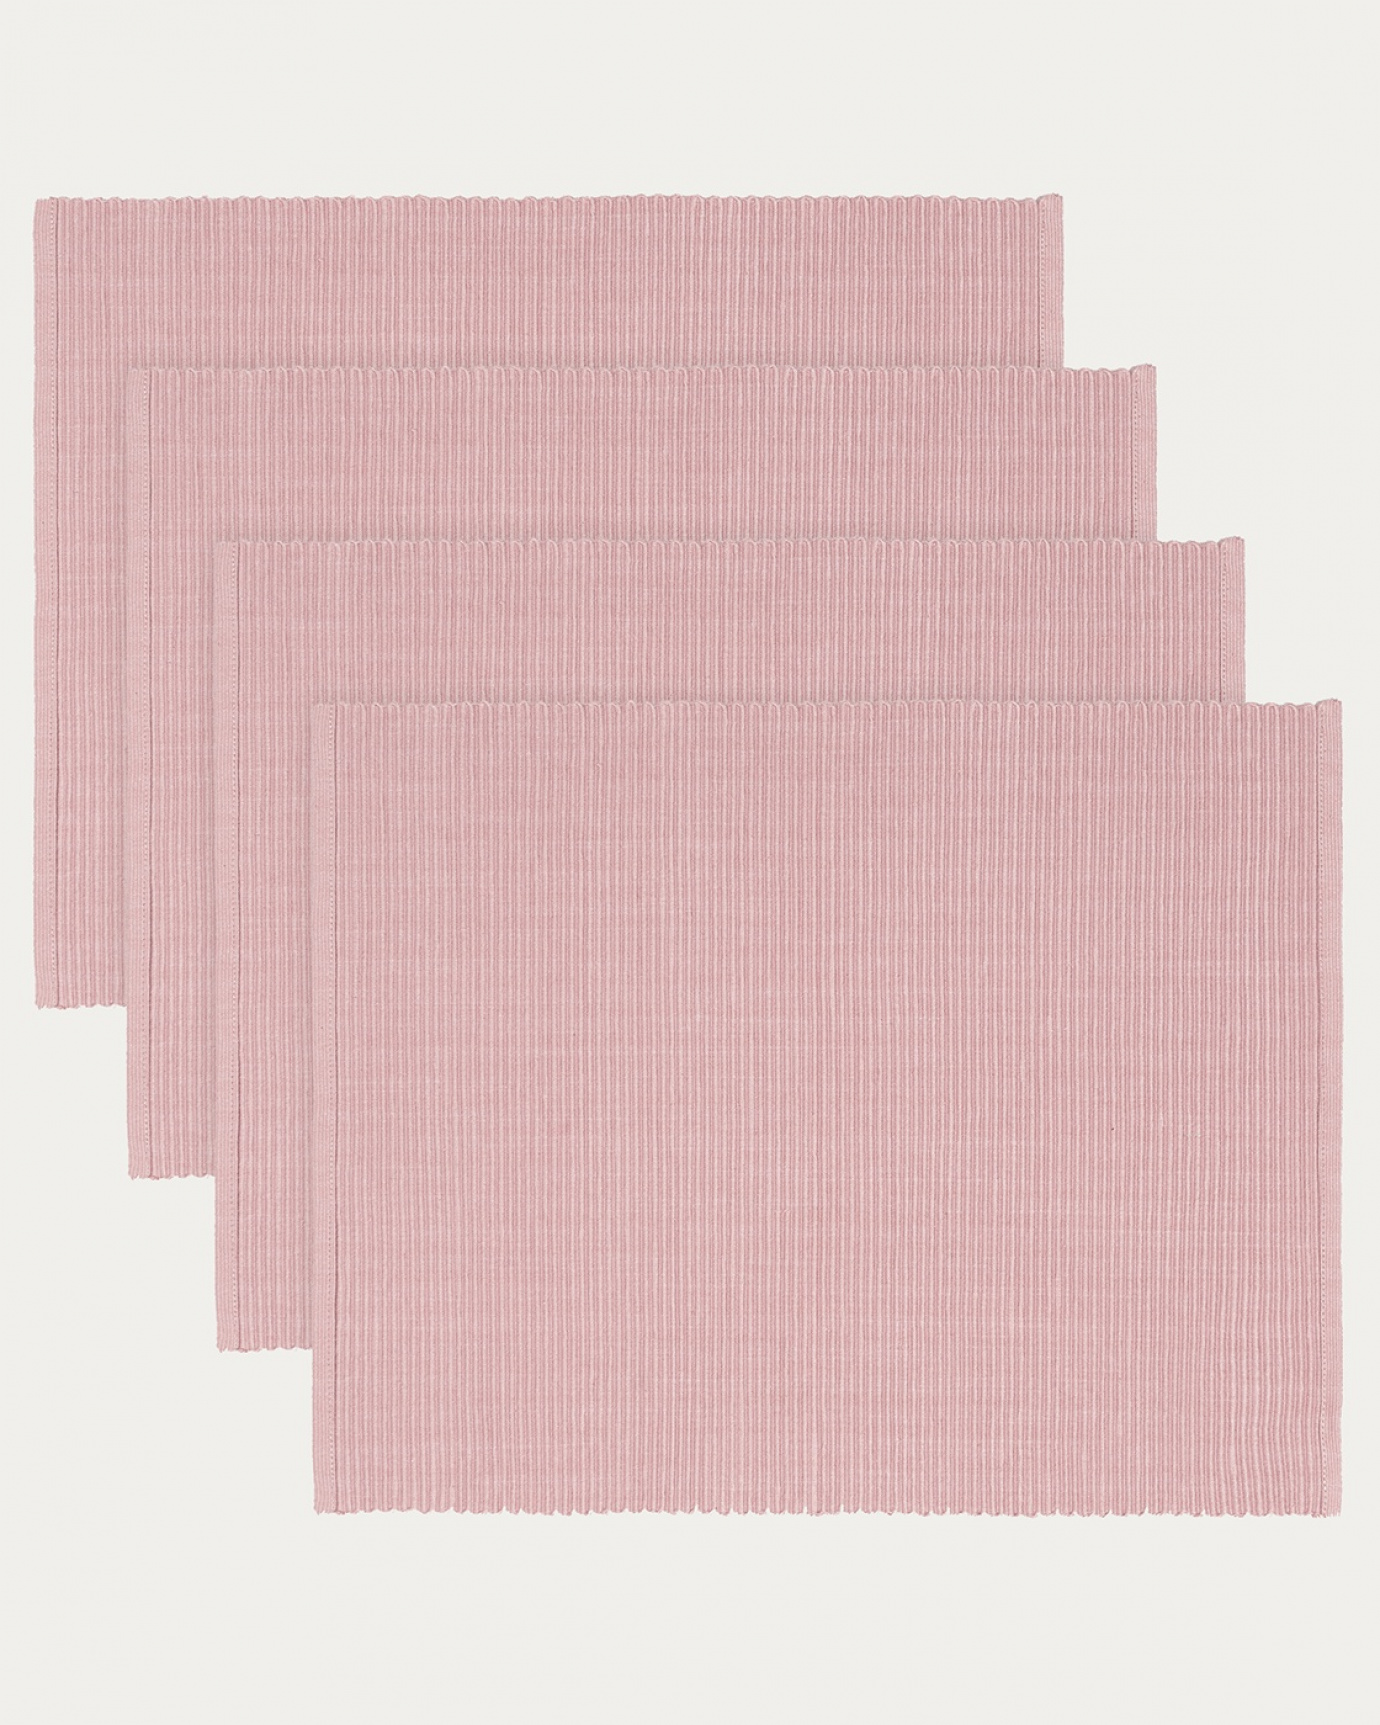 Produktbild dammig rosa UNI bordstablett av mjuk bomull i ribbad kvalité från LINUM DESIGN. Storlek 35x46 cm och säljs i 4-pack.